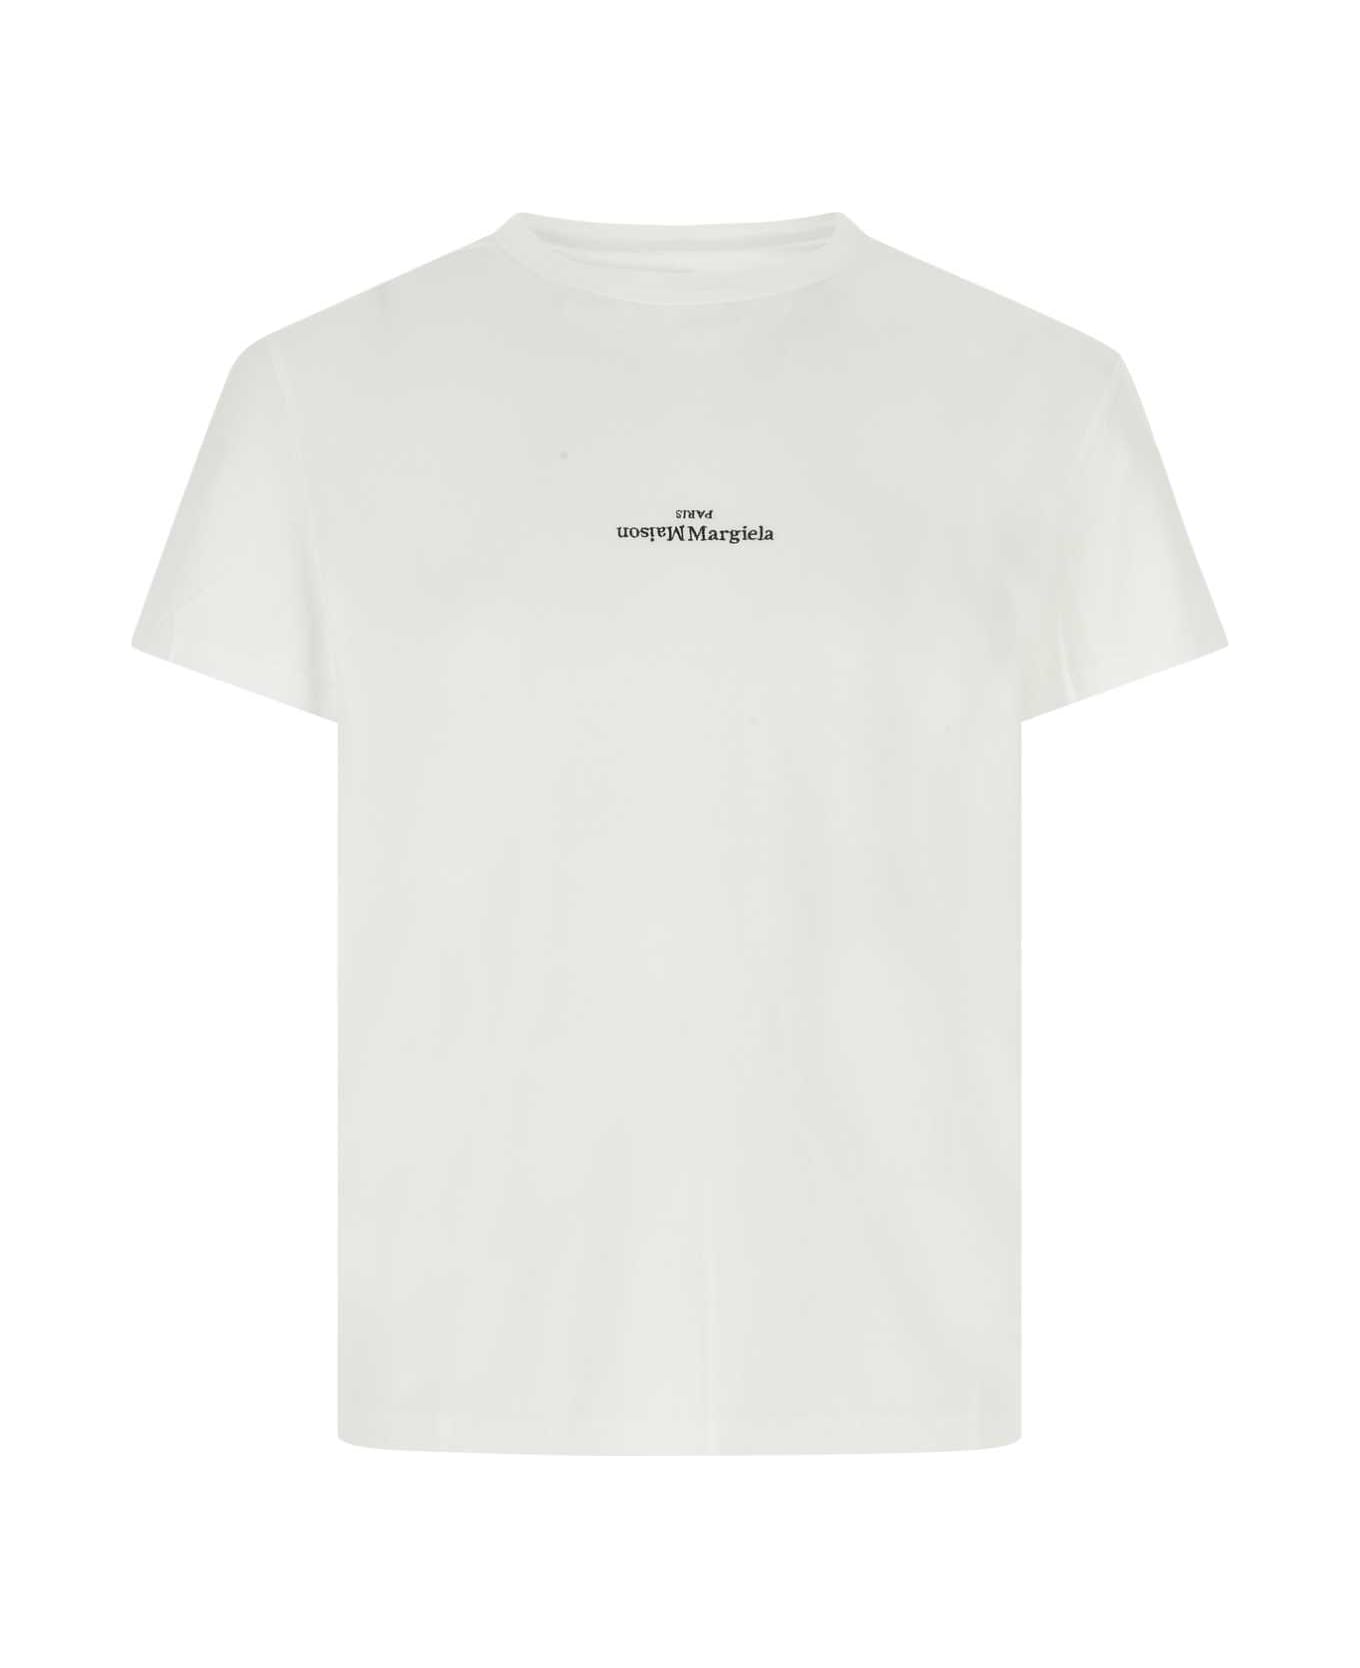 Maison Margiela White Cotton T-shirt - 994 シャツ